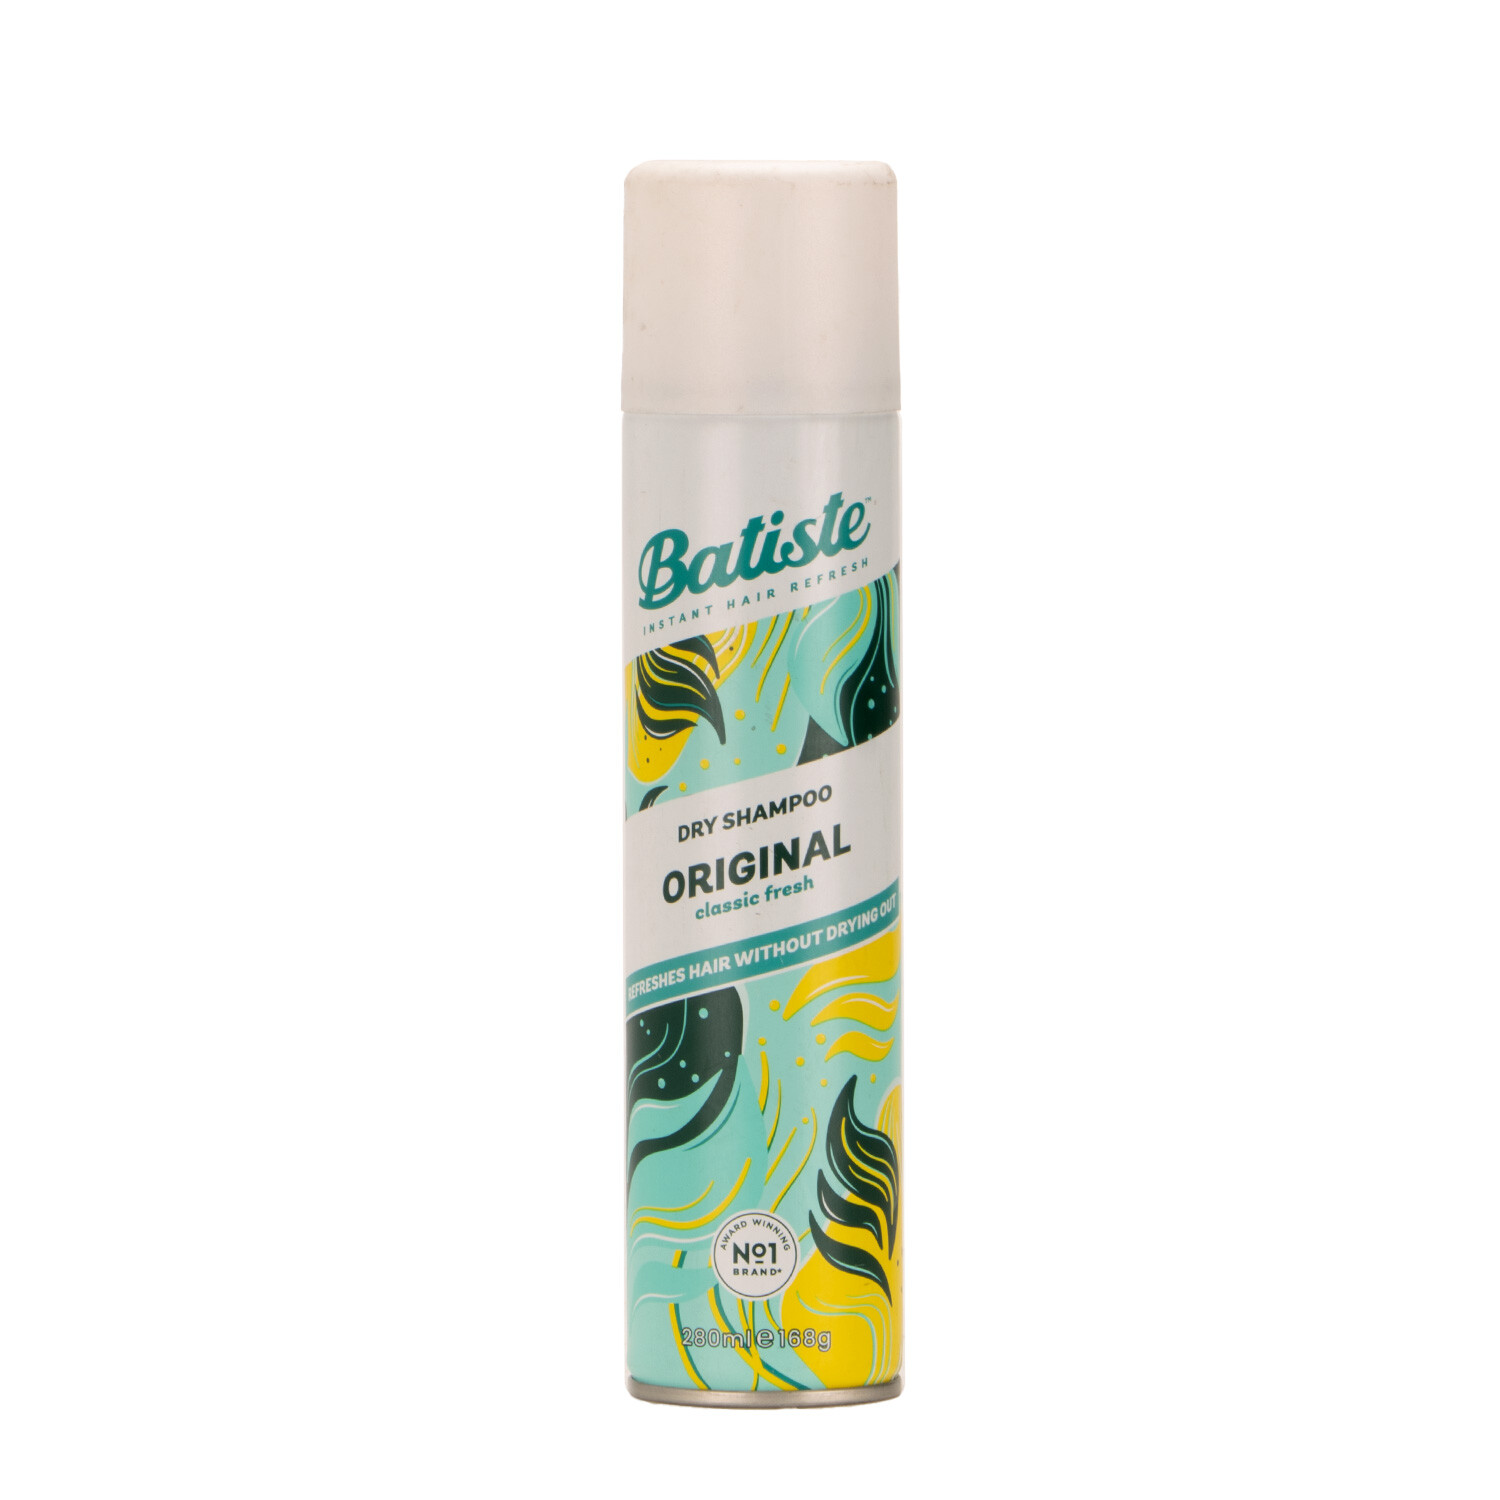 Batiste Original Dry Shampoo 280ml Image